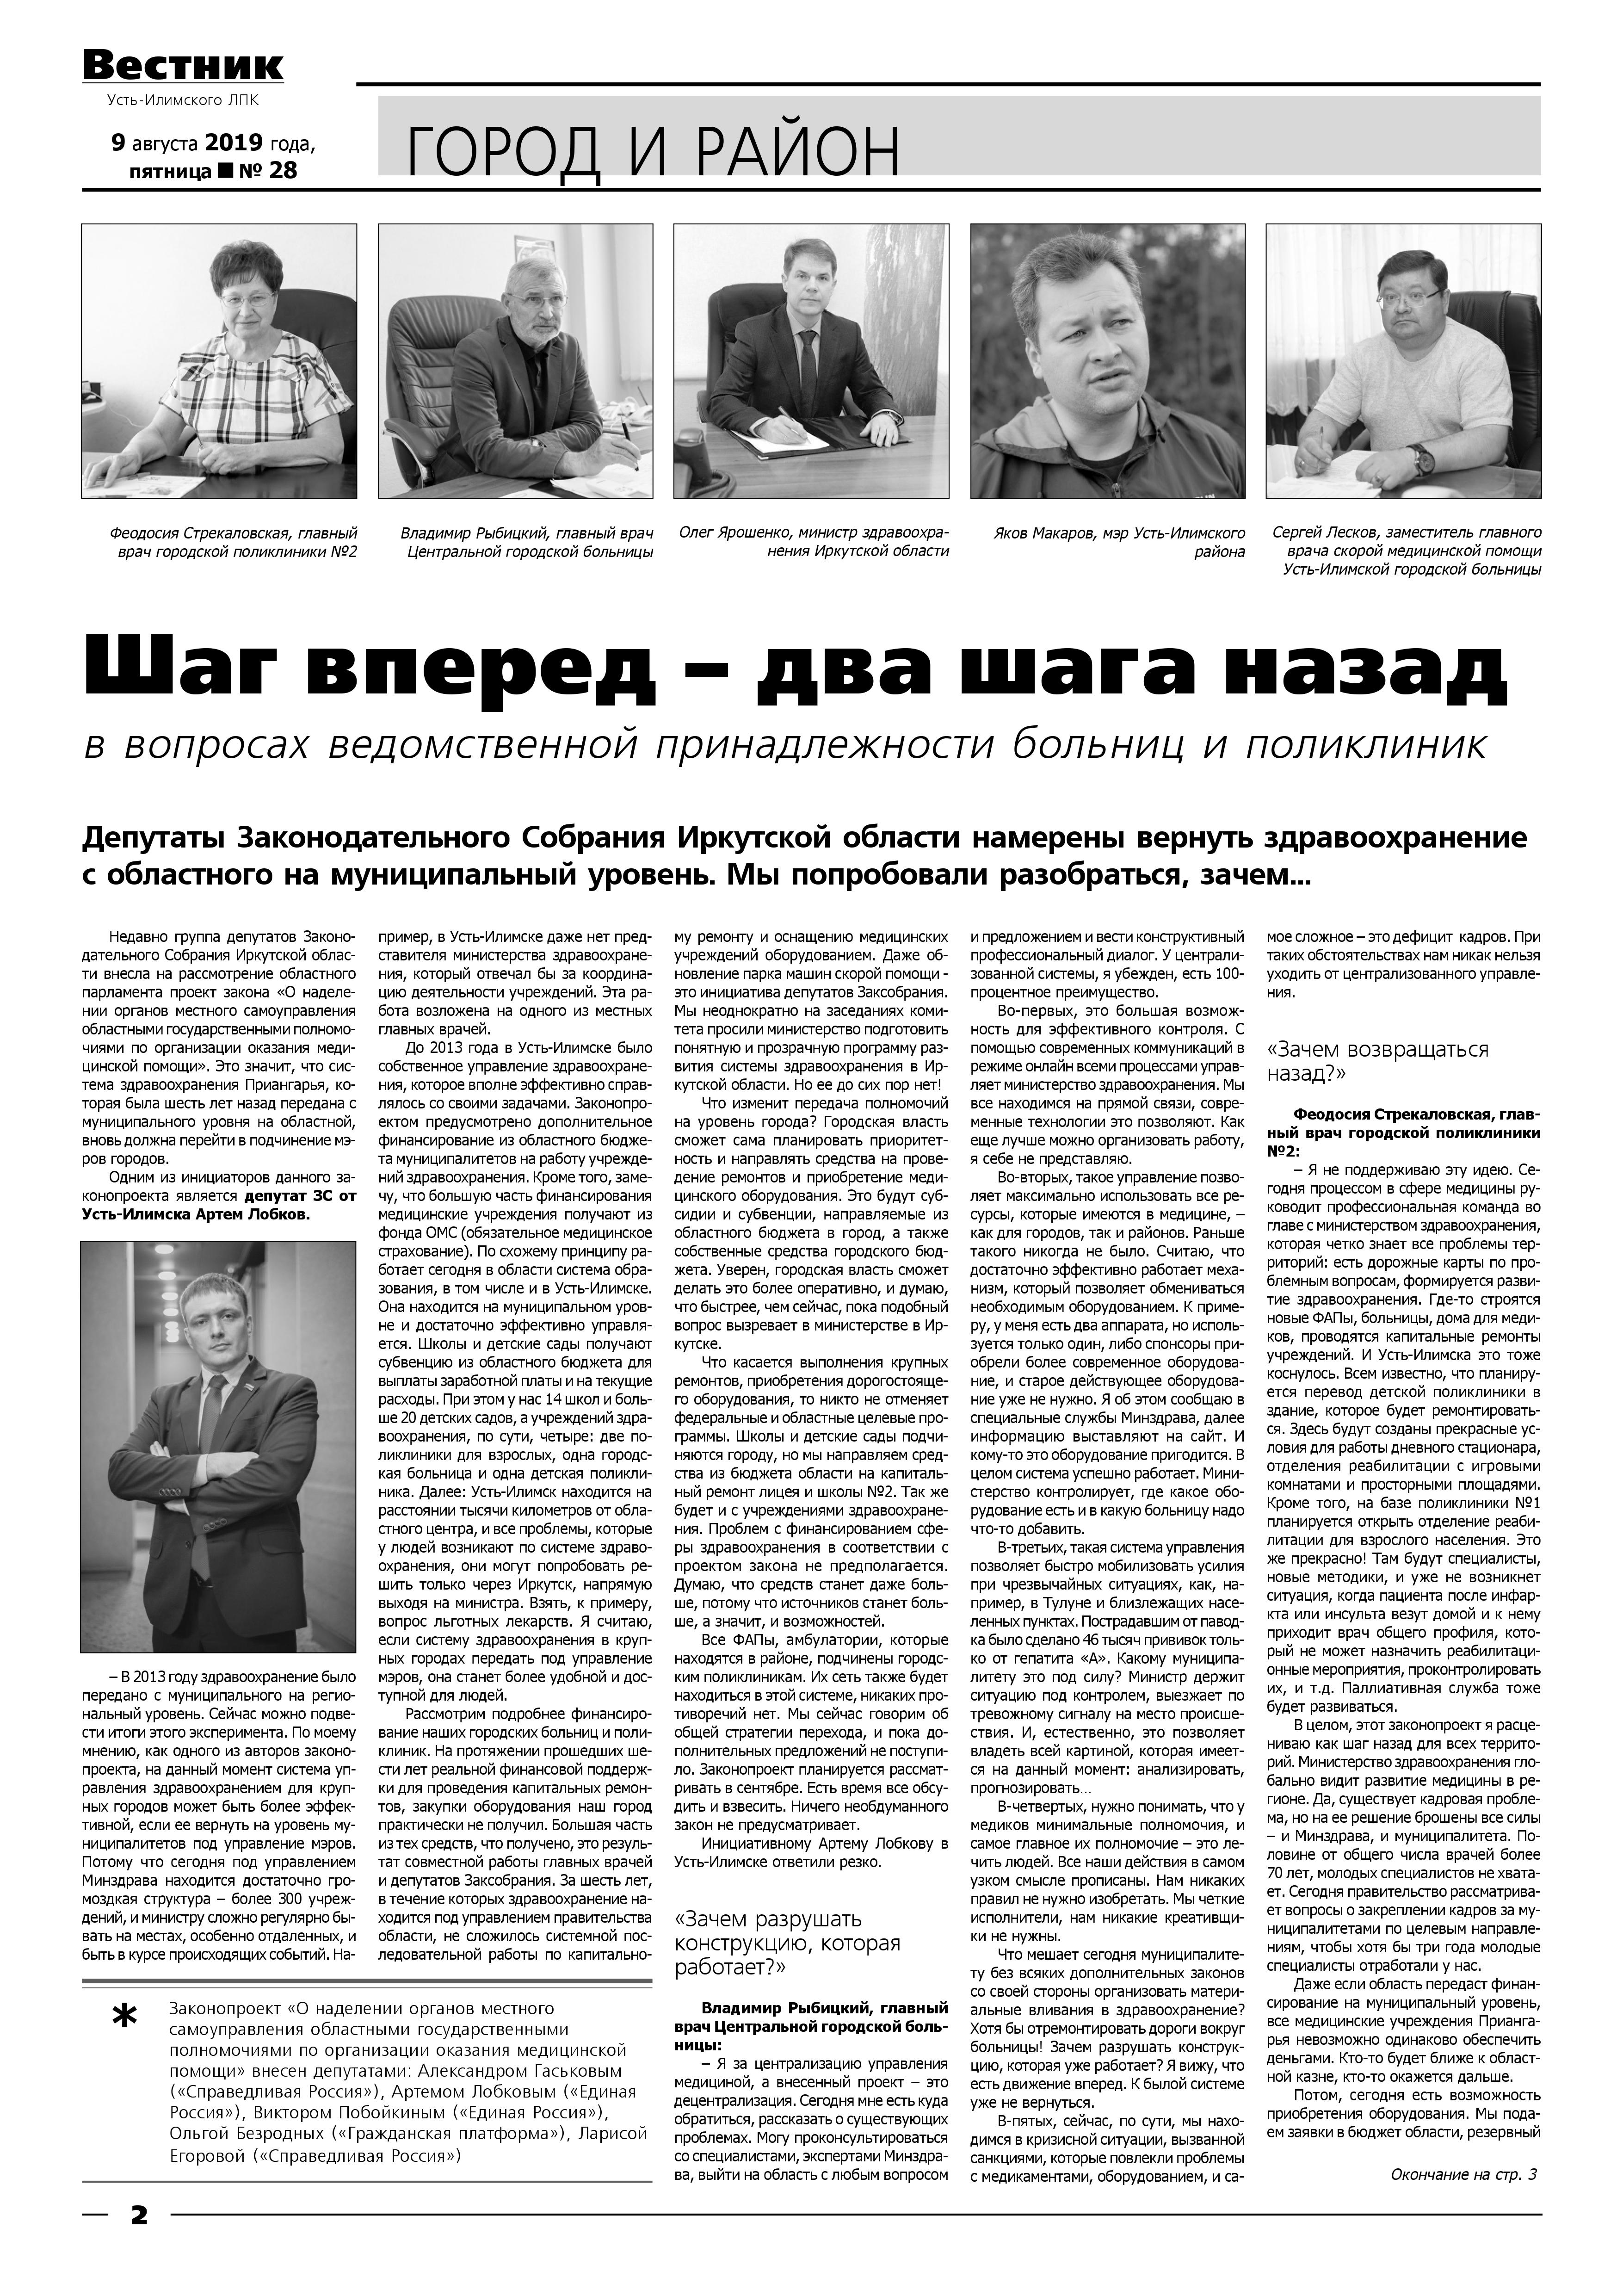 Вестник Усть-Илимского ЛПК № 28 от 09.08.2019 стр.1